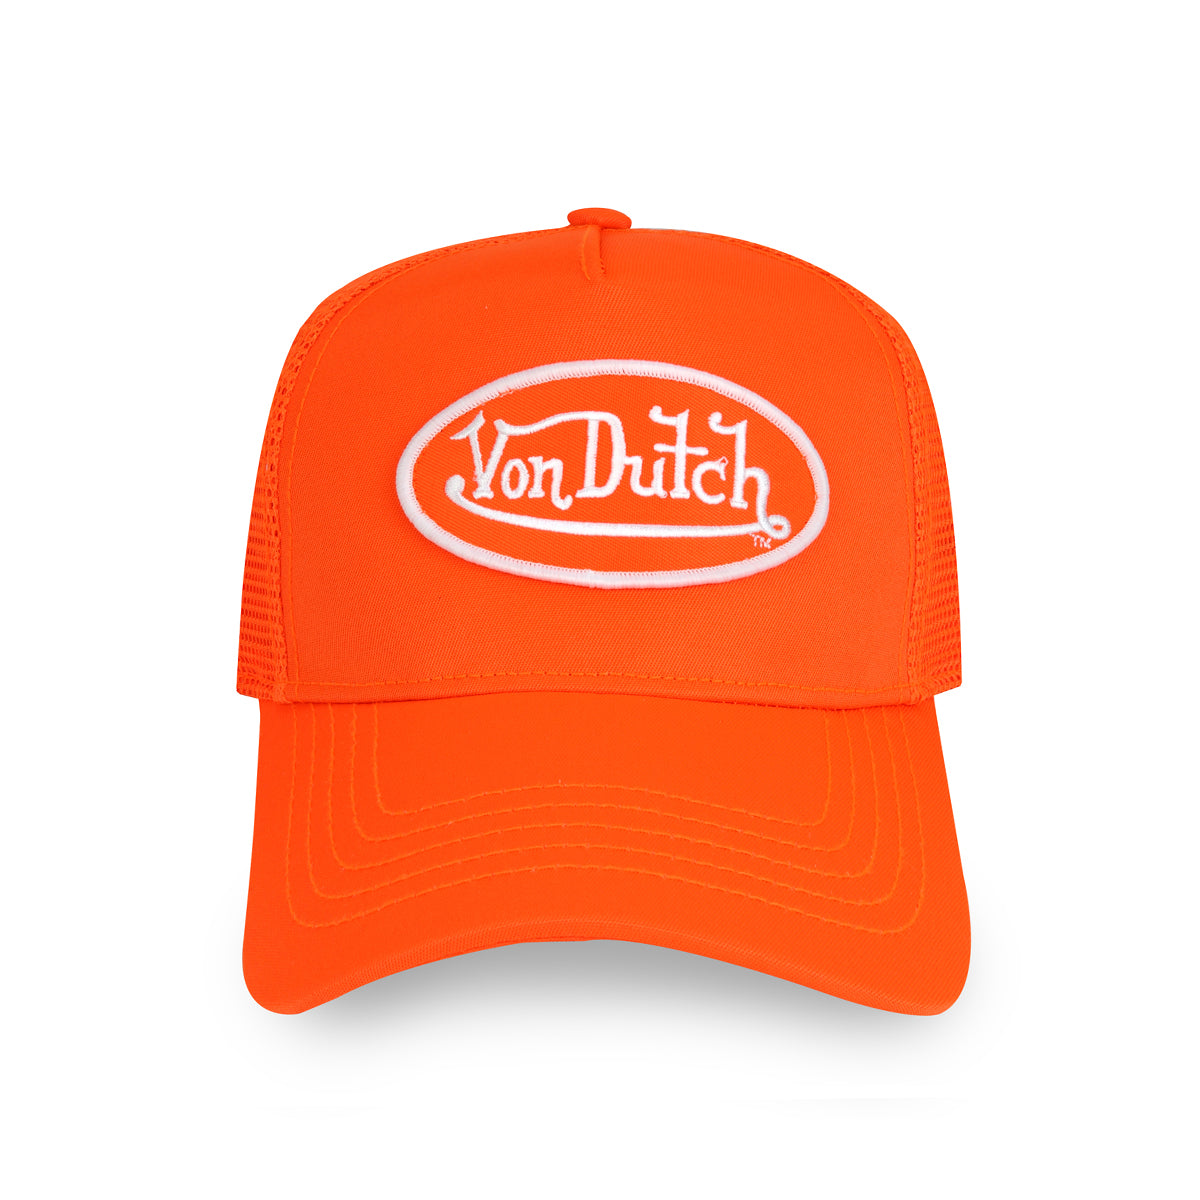 Casquette Von Dutch Baseball Lofb orange - Von Dutch